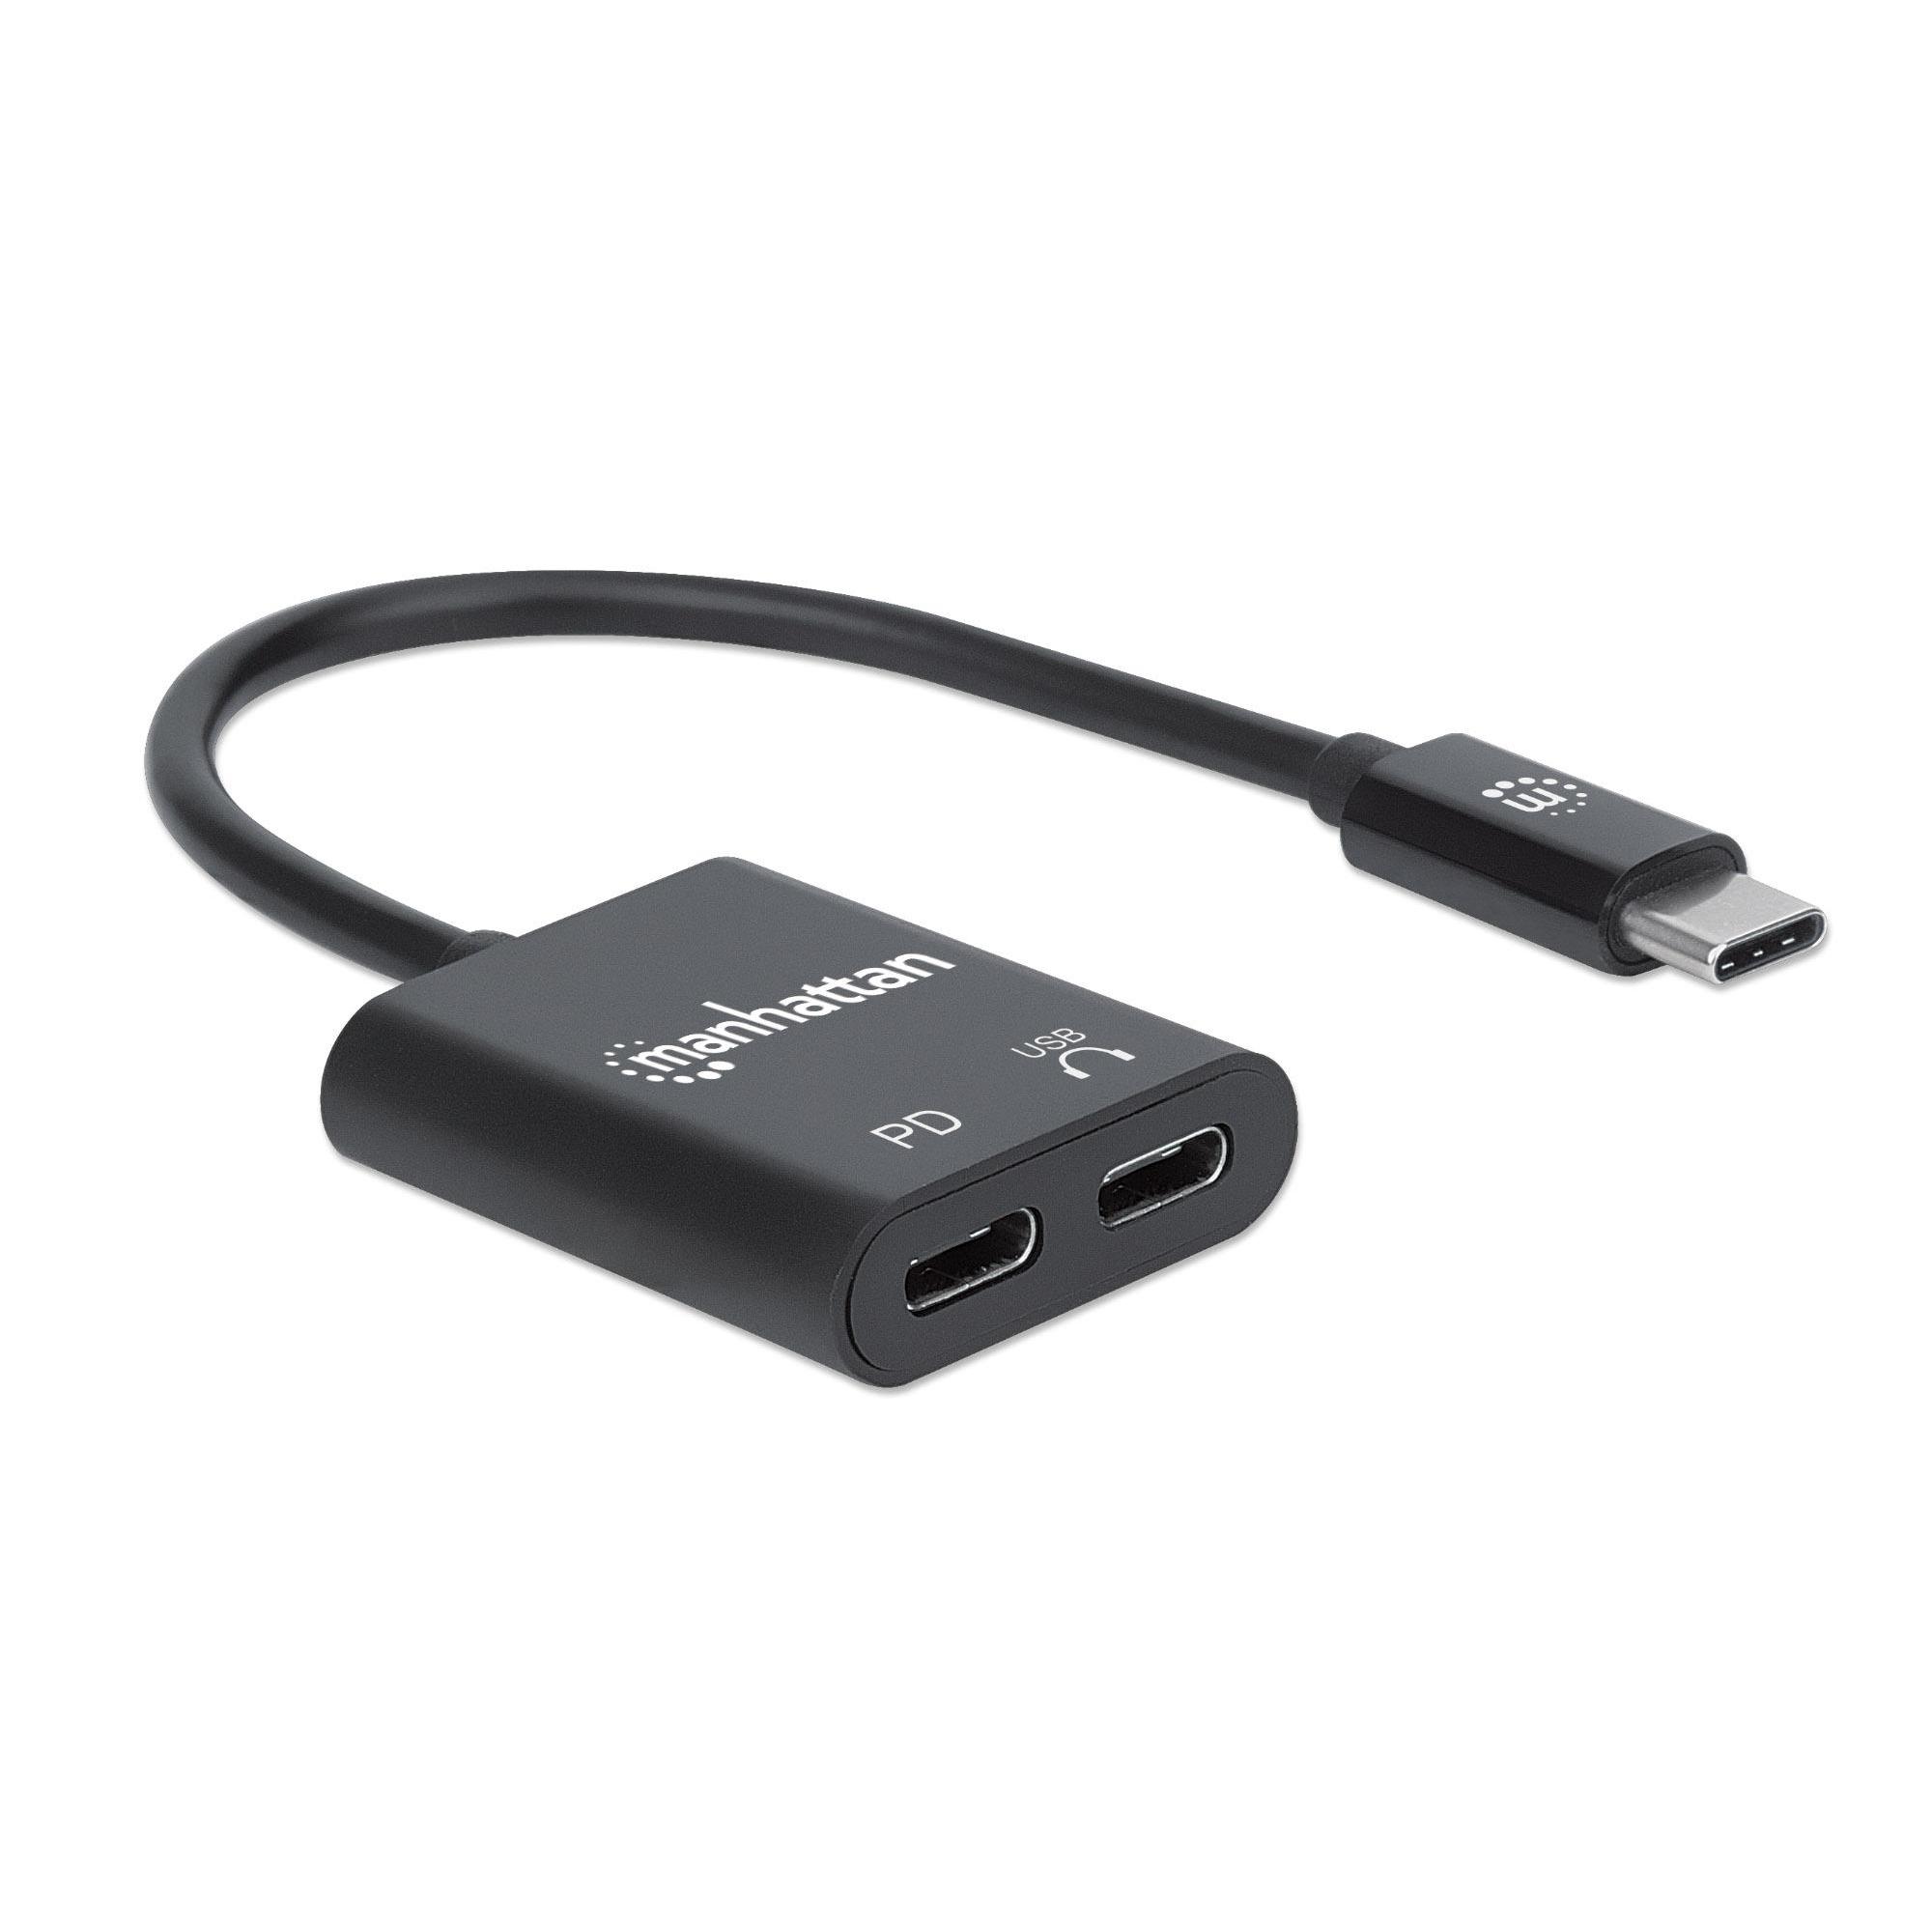 Adattatore Audio USB-C™ Maschio 2x USB-C™ Femmina